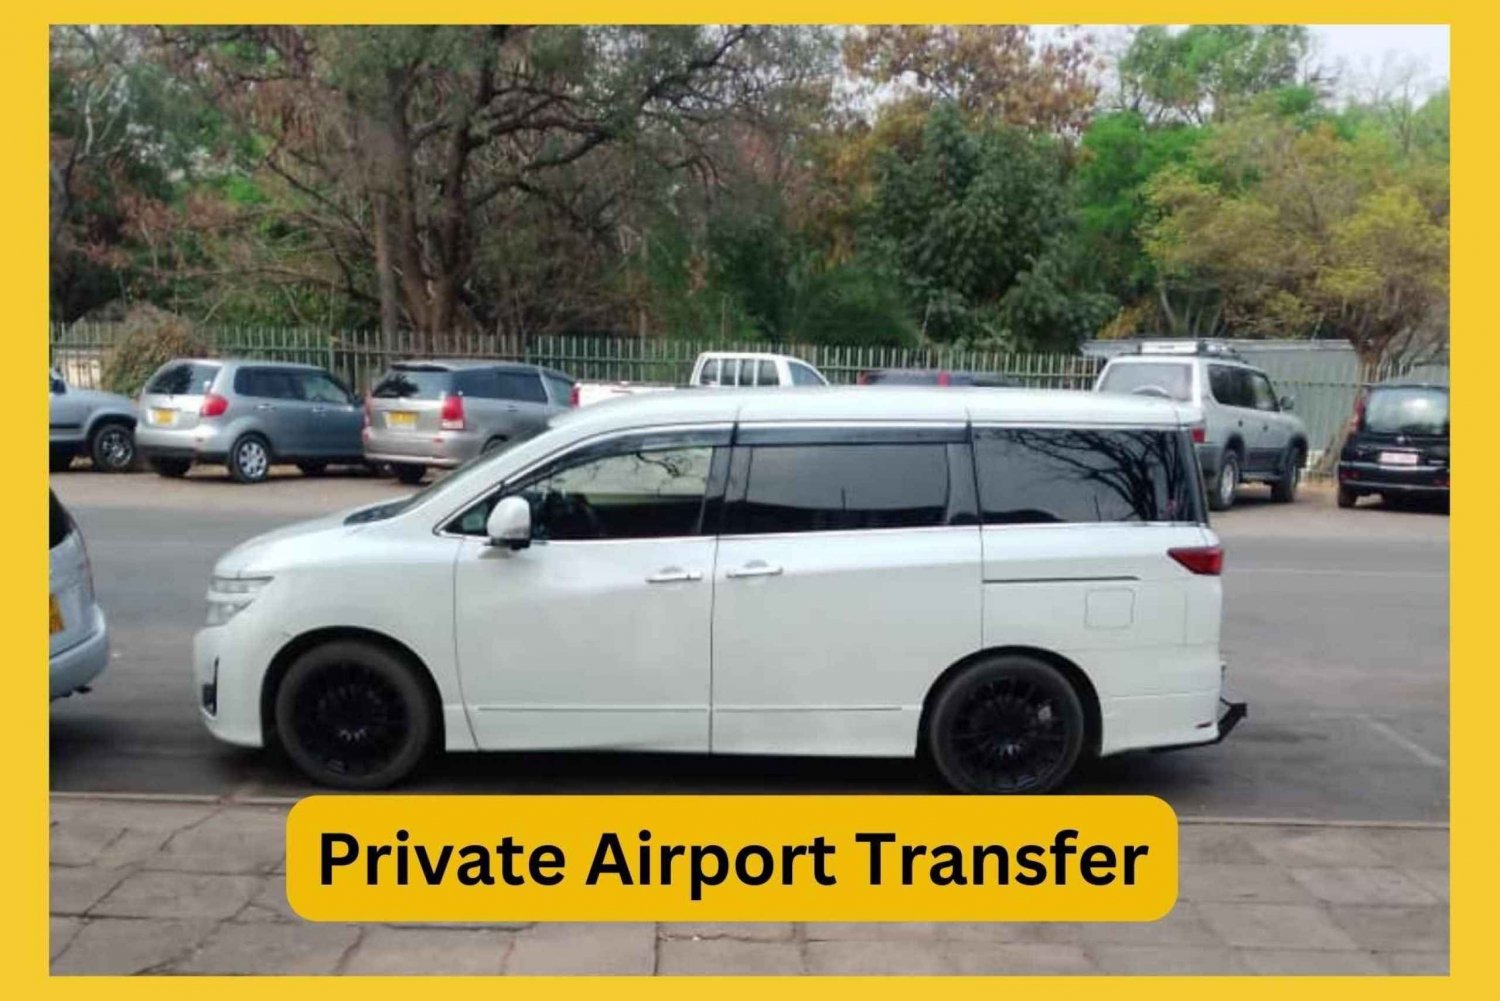 Transfer aeroportuale privato, da 3 a 5 viaggiatori con aria condizionata